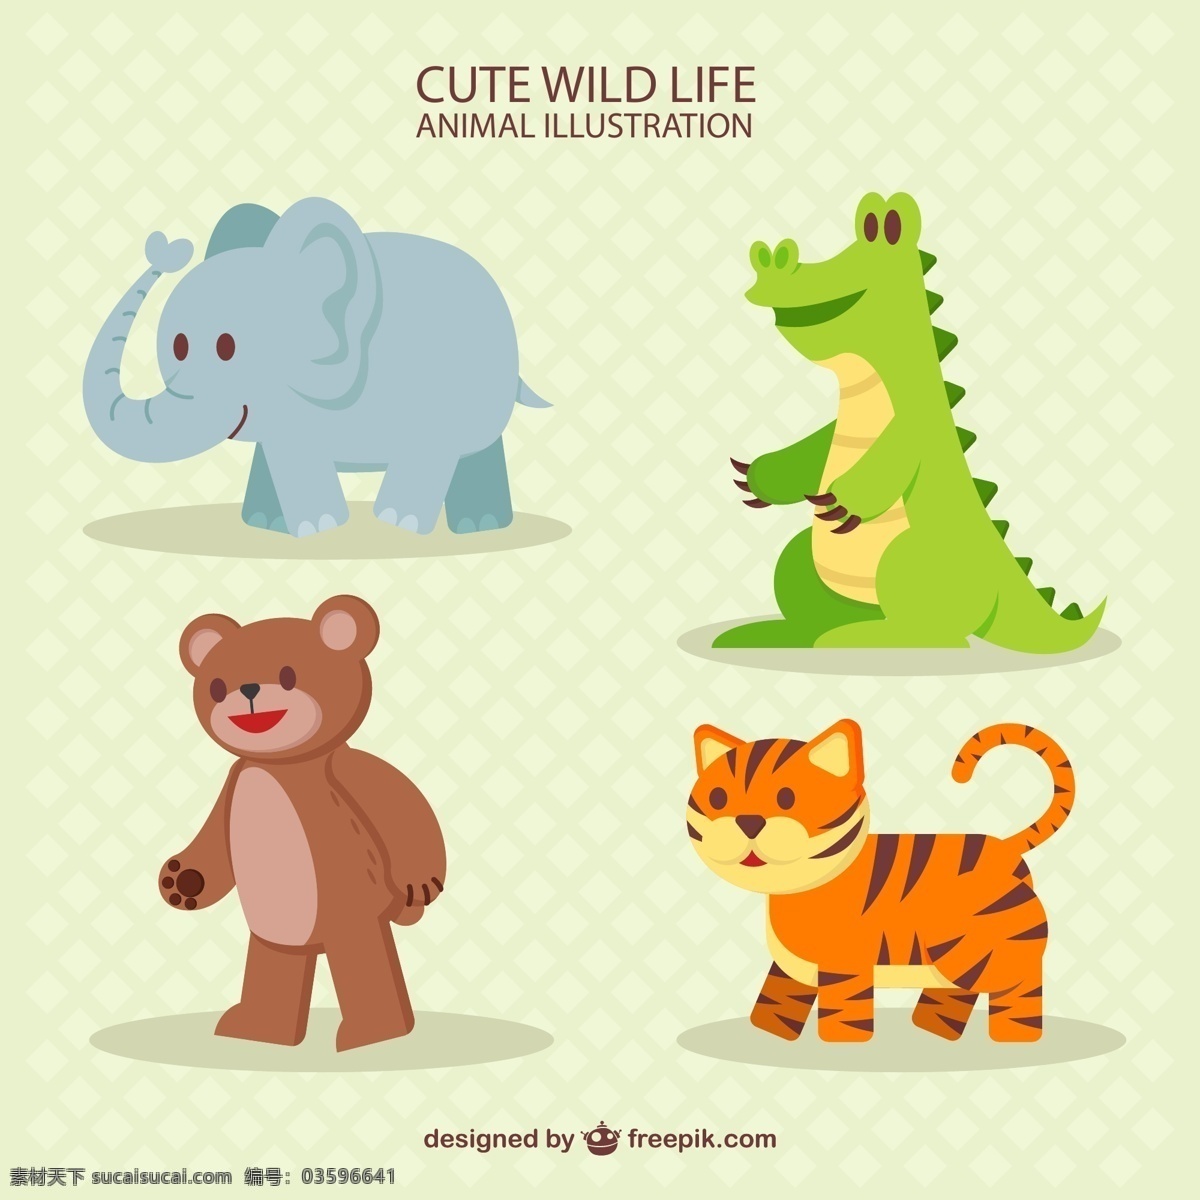 矢量动物素材 可爱动物 卡通动物 q版动物 矢量 可爱 卡通 野生动物 卡通形象 非洲动物 动物矢量素材